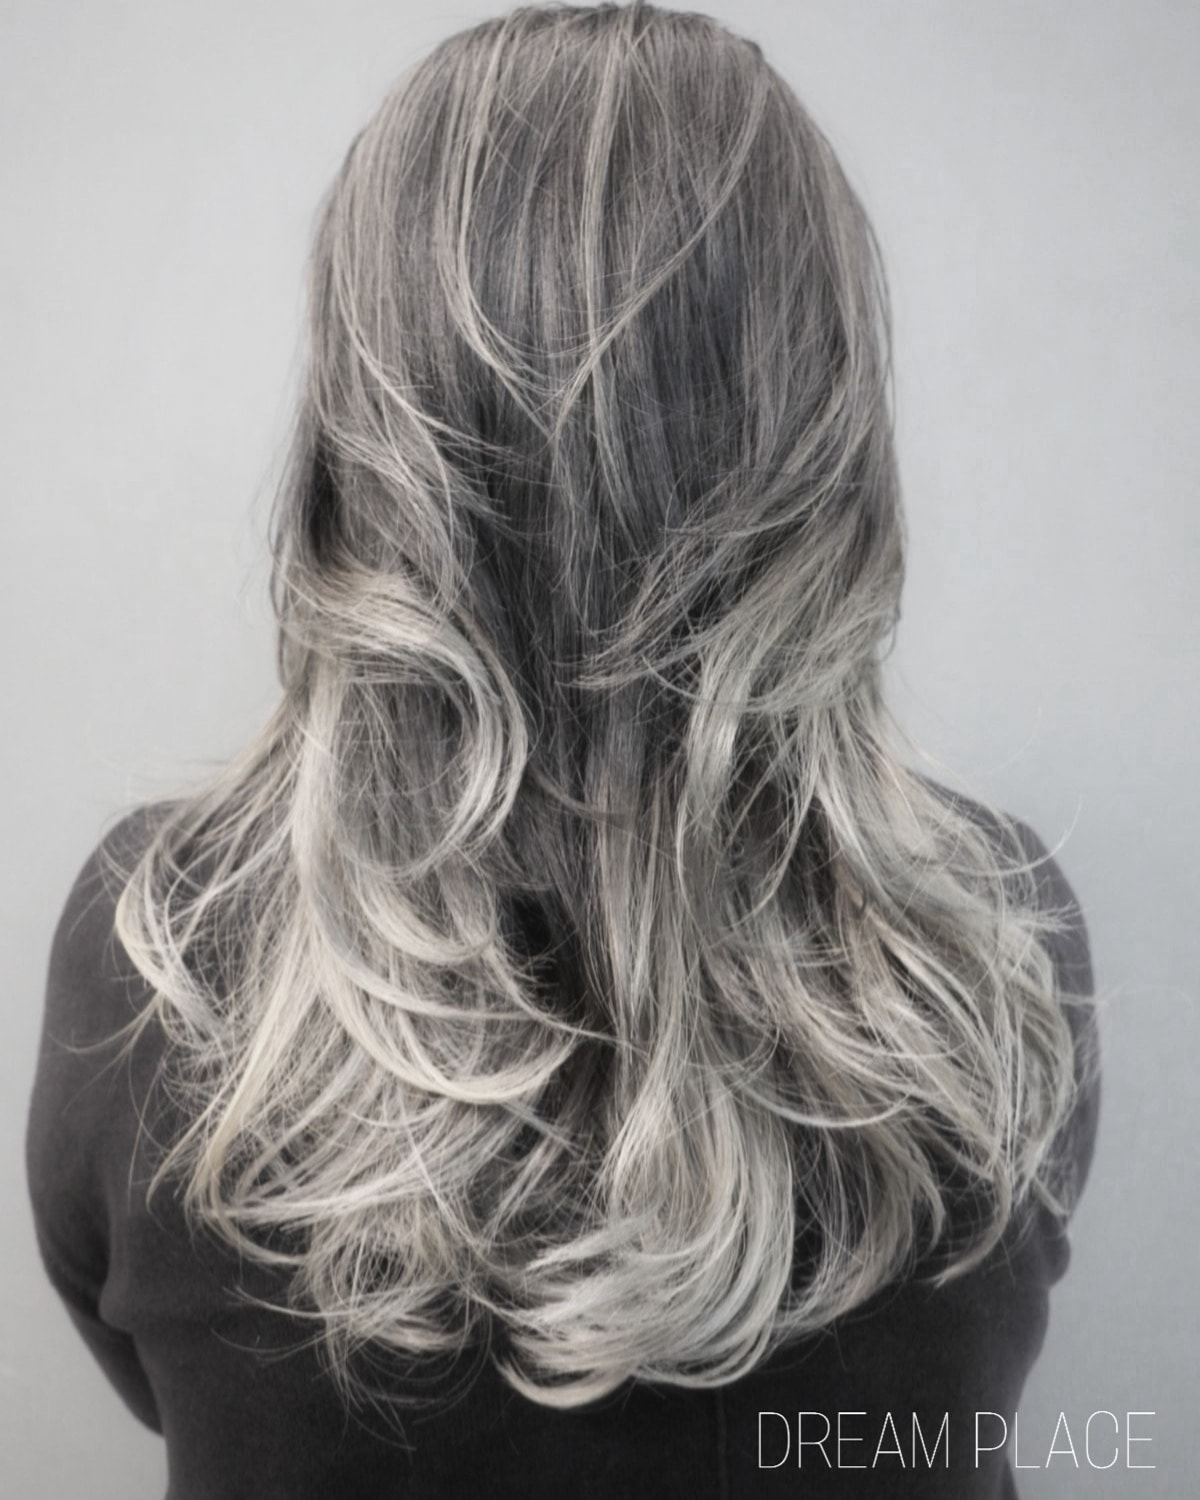 髮型作品参考:漸變灰色